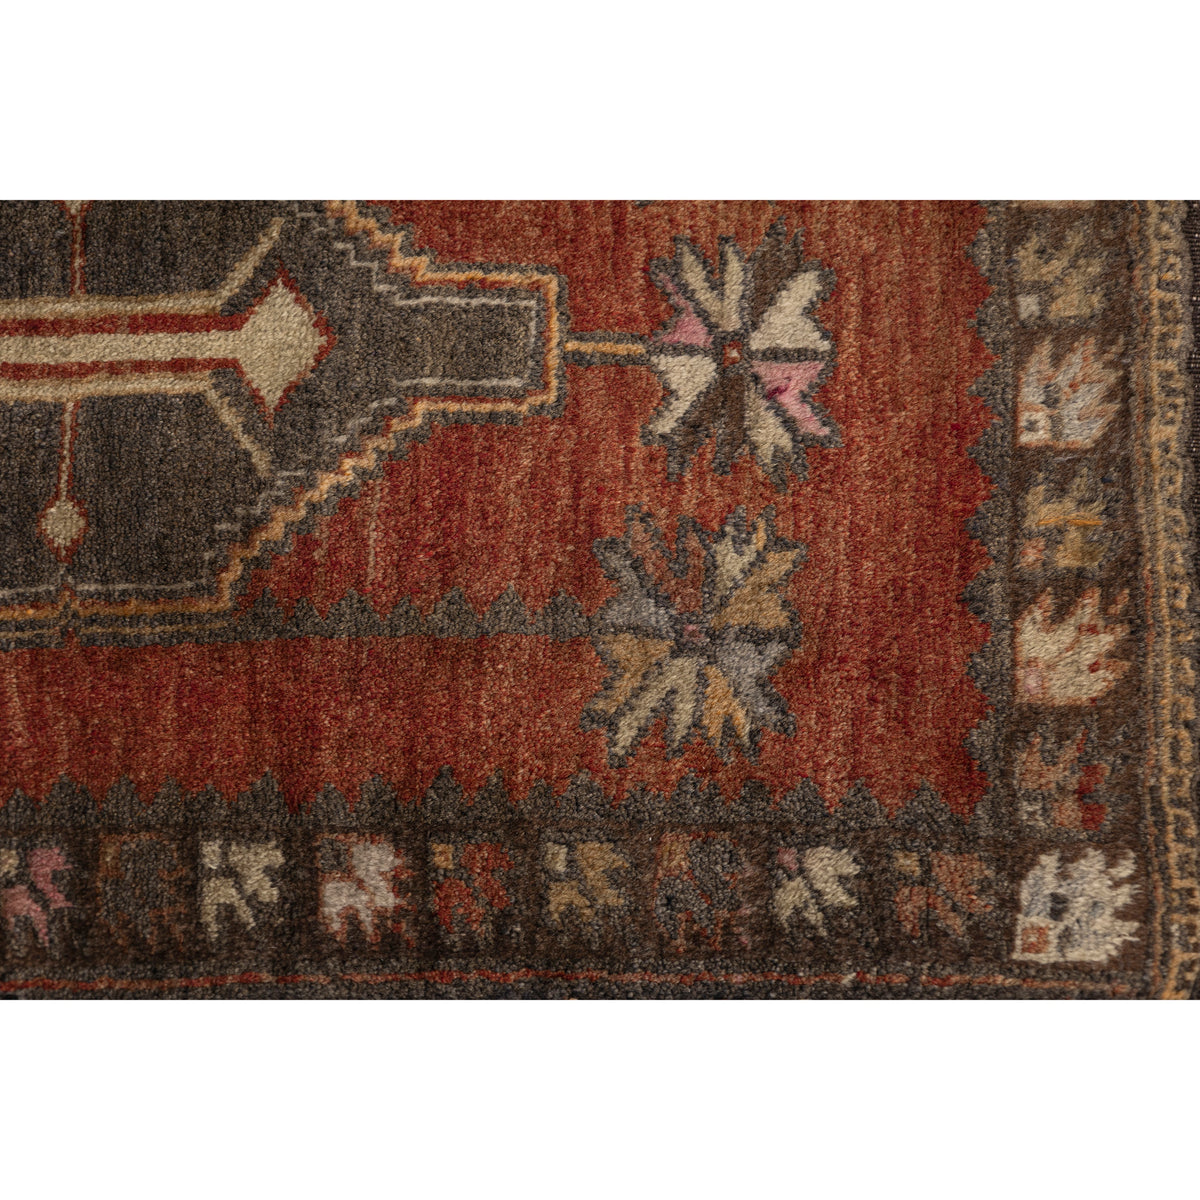 Rashant- (1'9" x 2'10") Vintage Turkish Rug